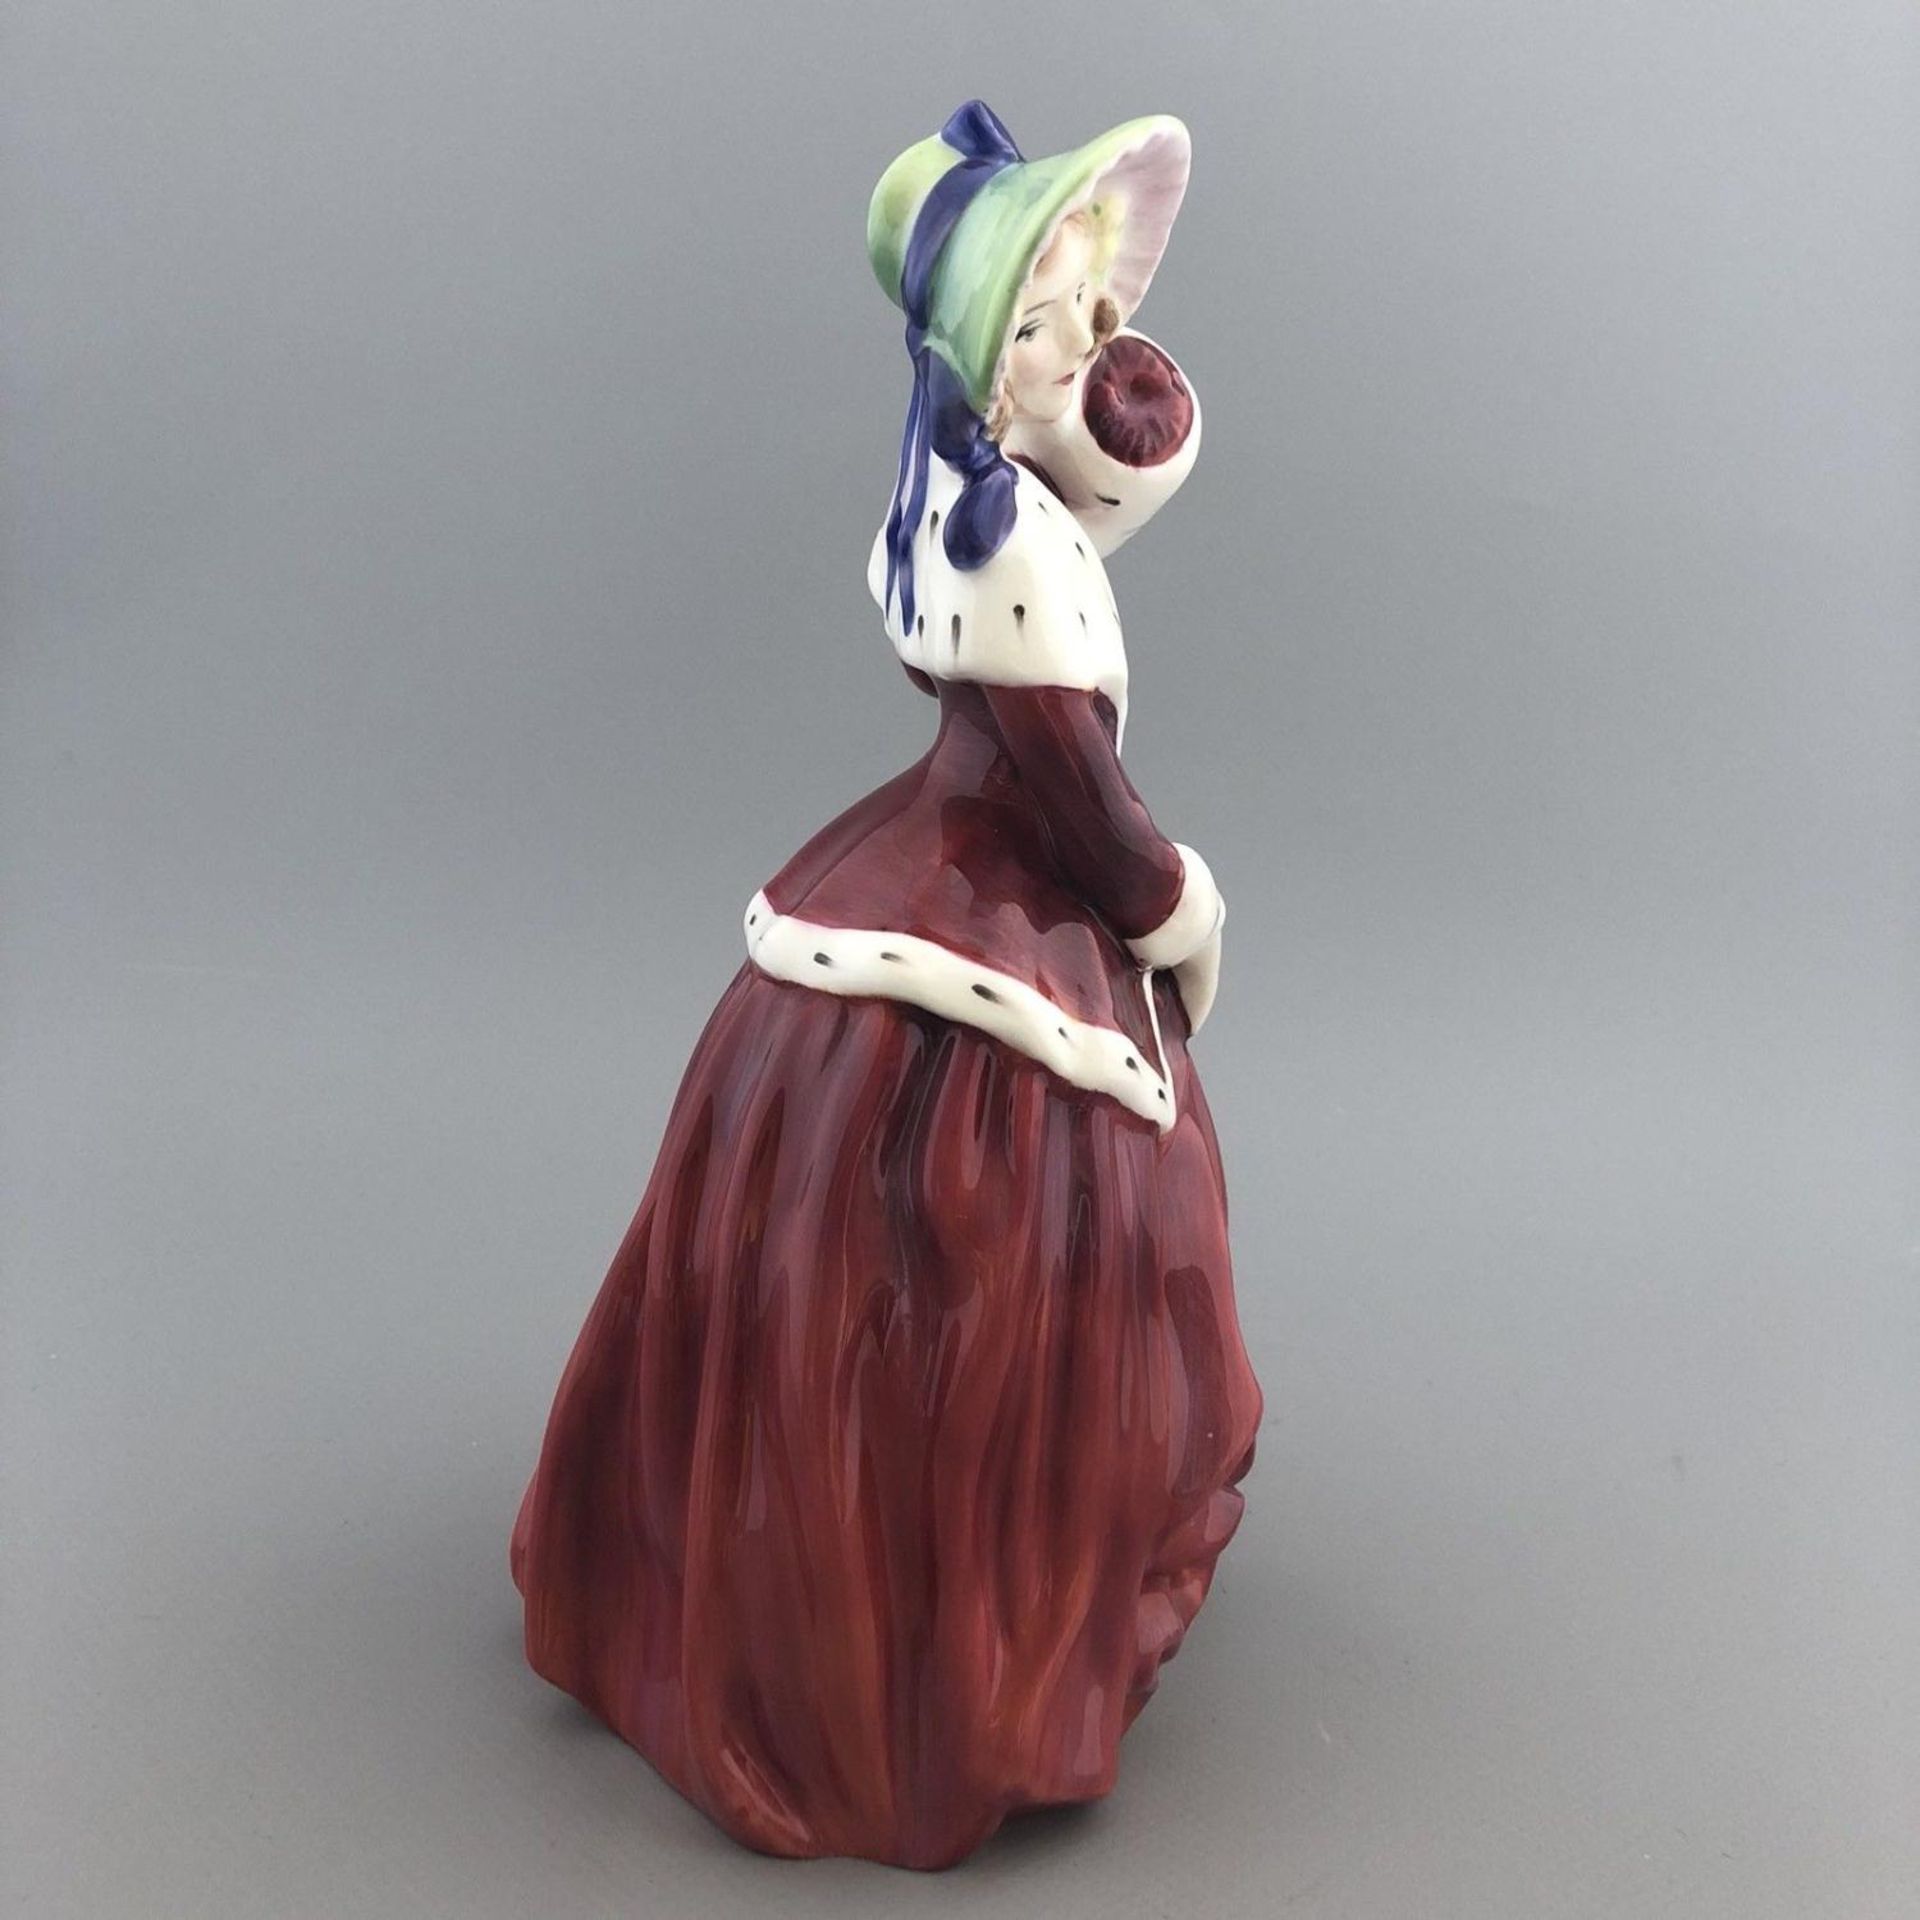 English Porcelain Figurine "Christmas Morn" - Royal Doulton HN 1992 - Image 2 of 4